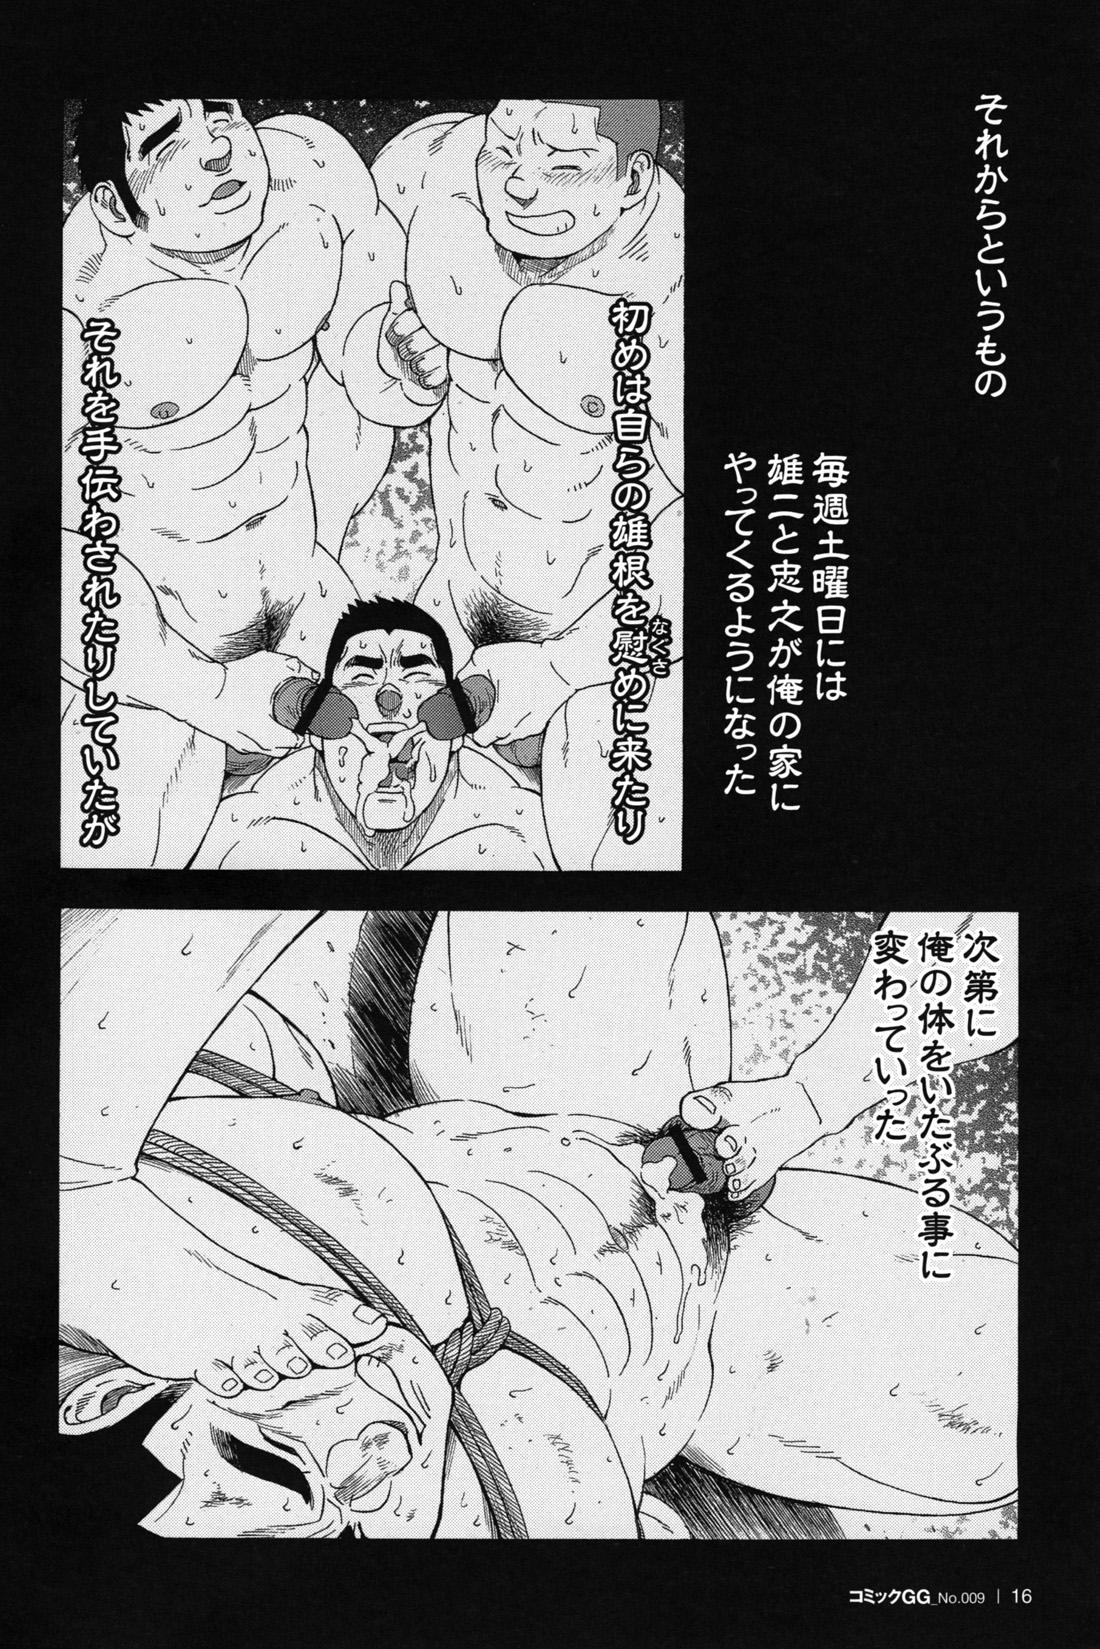 Comic G-men Gaho No.09 Gacchibi Zeme 17